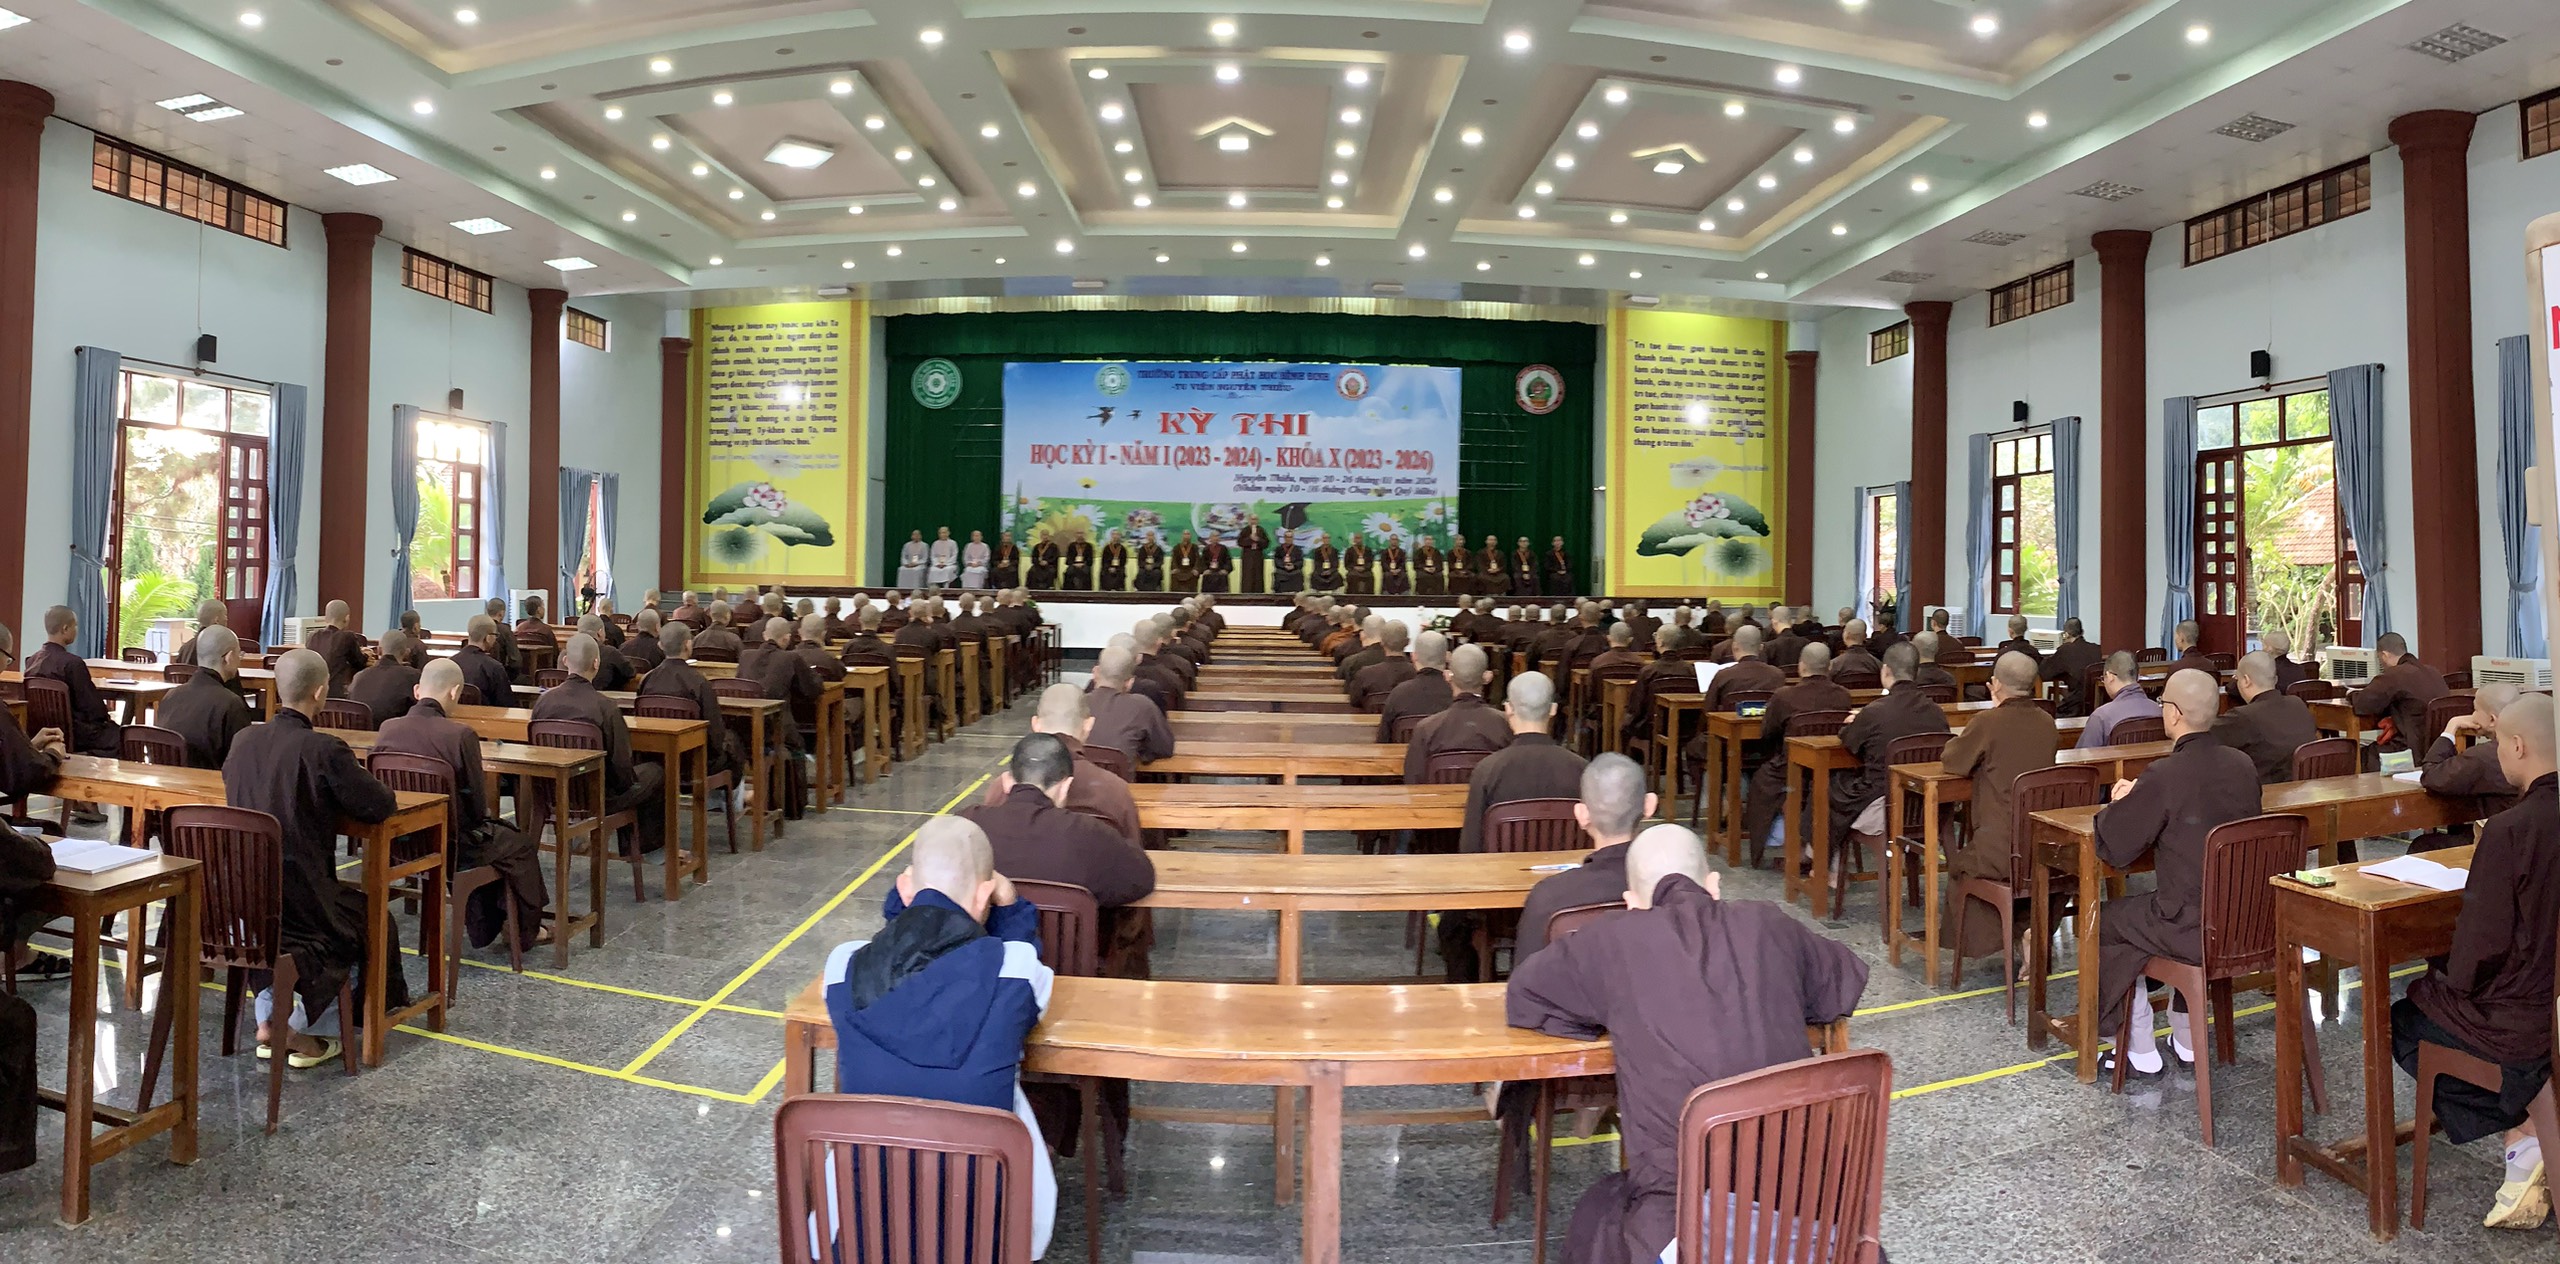 Trường Trung cấp Phật học Bình Định tổ chức thi học kỳ 1 năm I khóa X